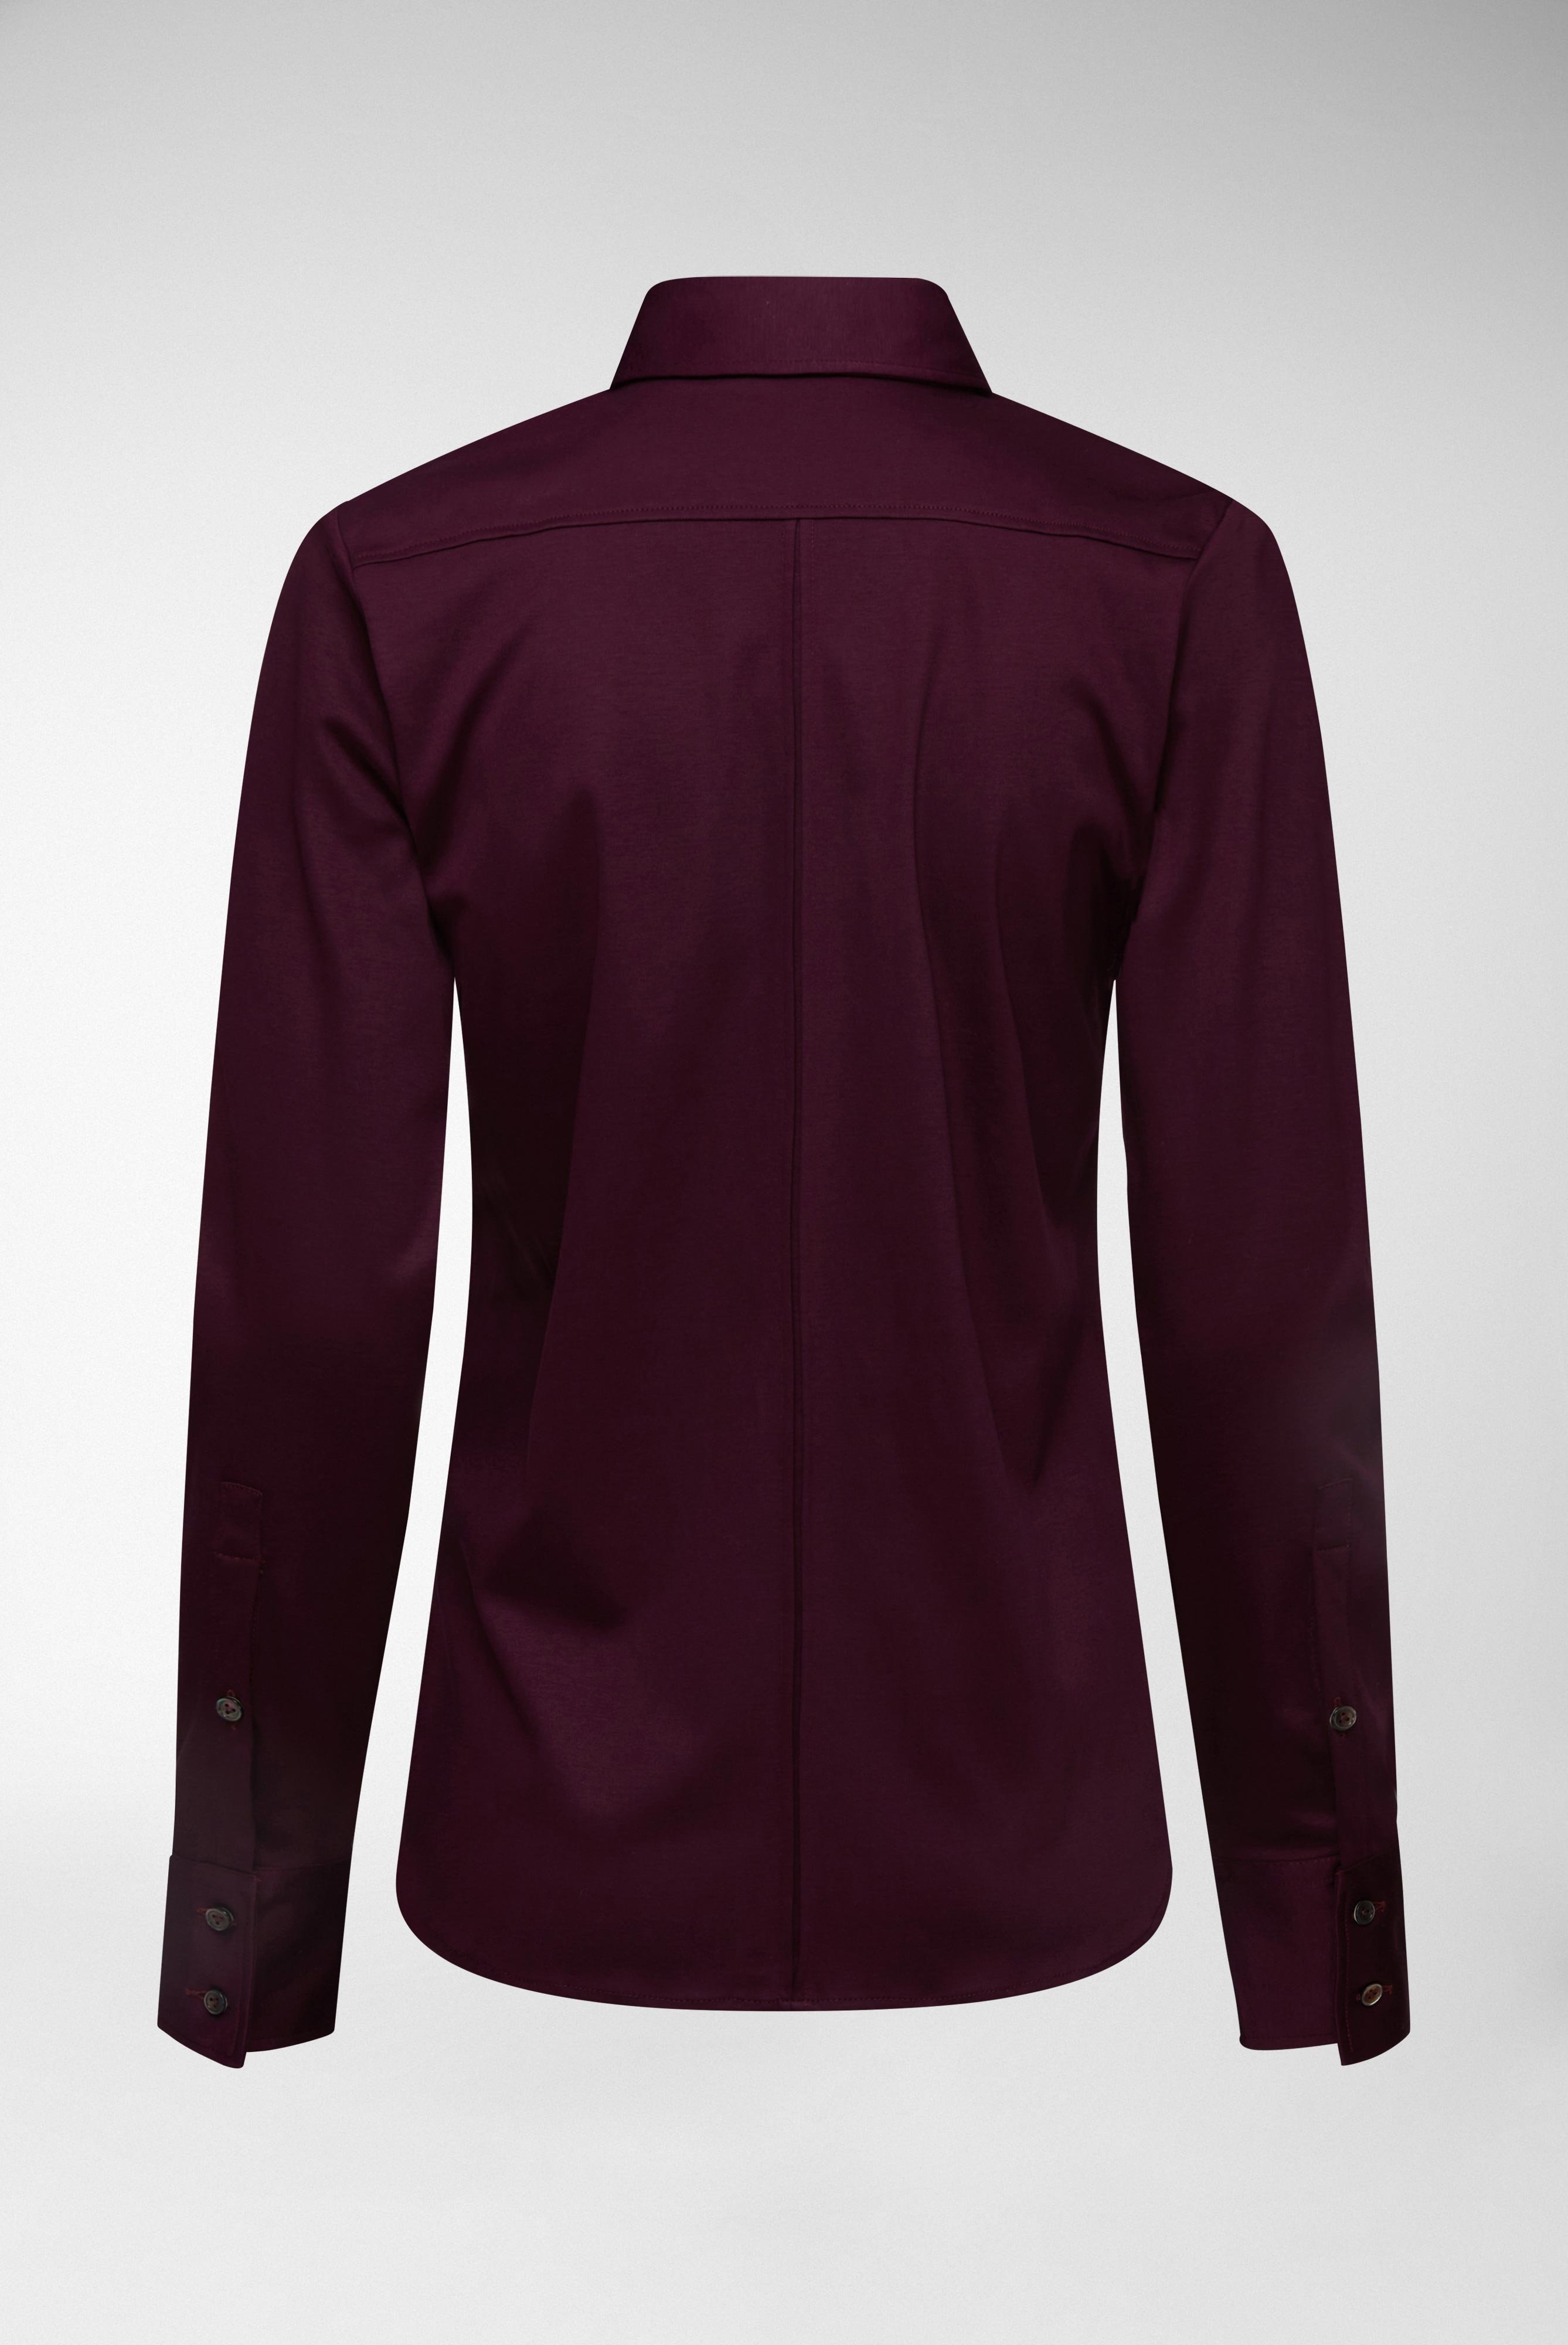 Casual Blusen+Taillierte Jersey Hemdbluse aus Schweizer Baumwolle+05.603Y..180031.590.44